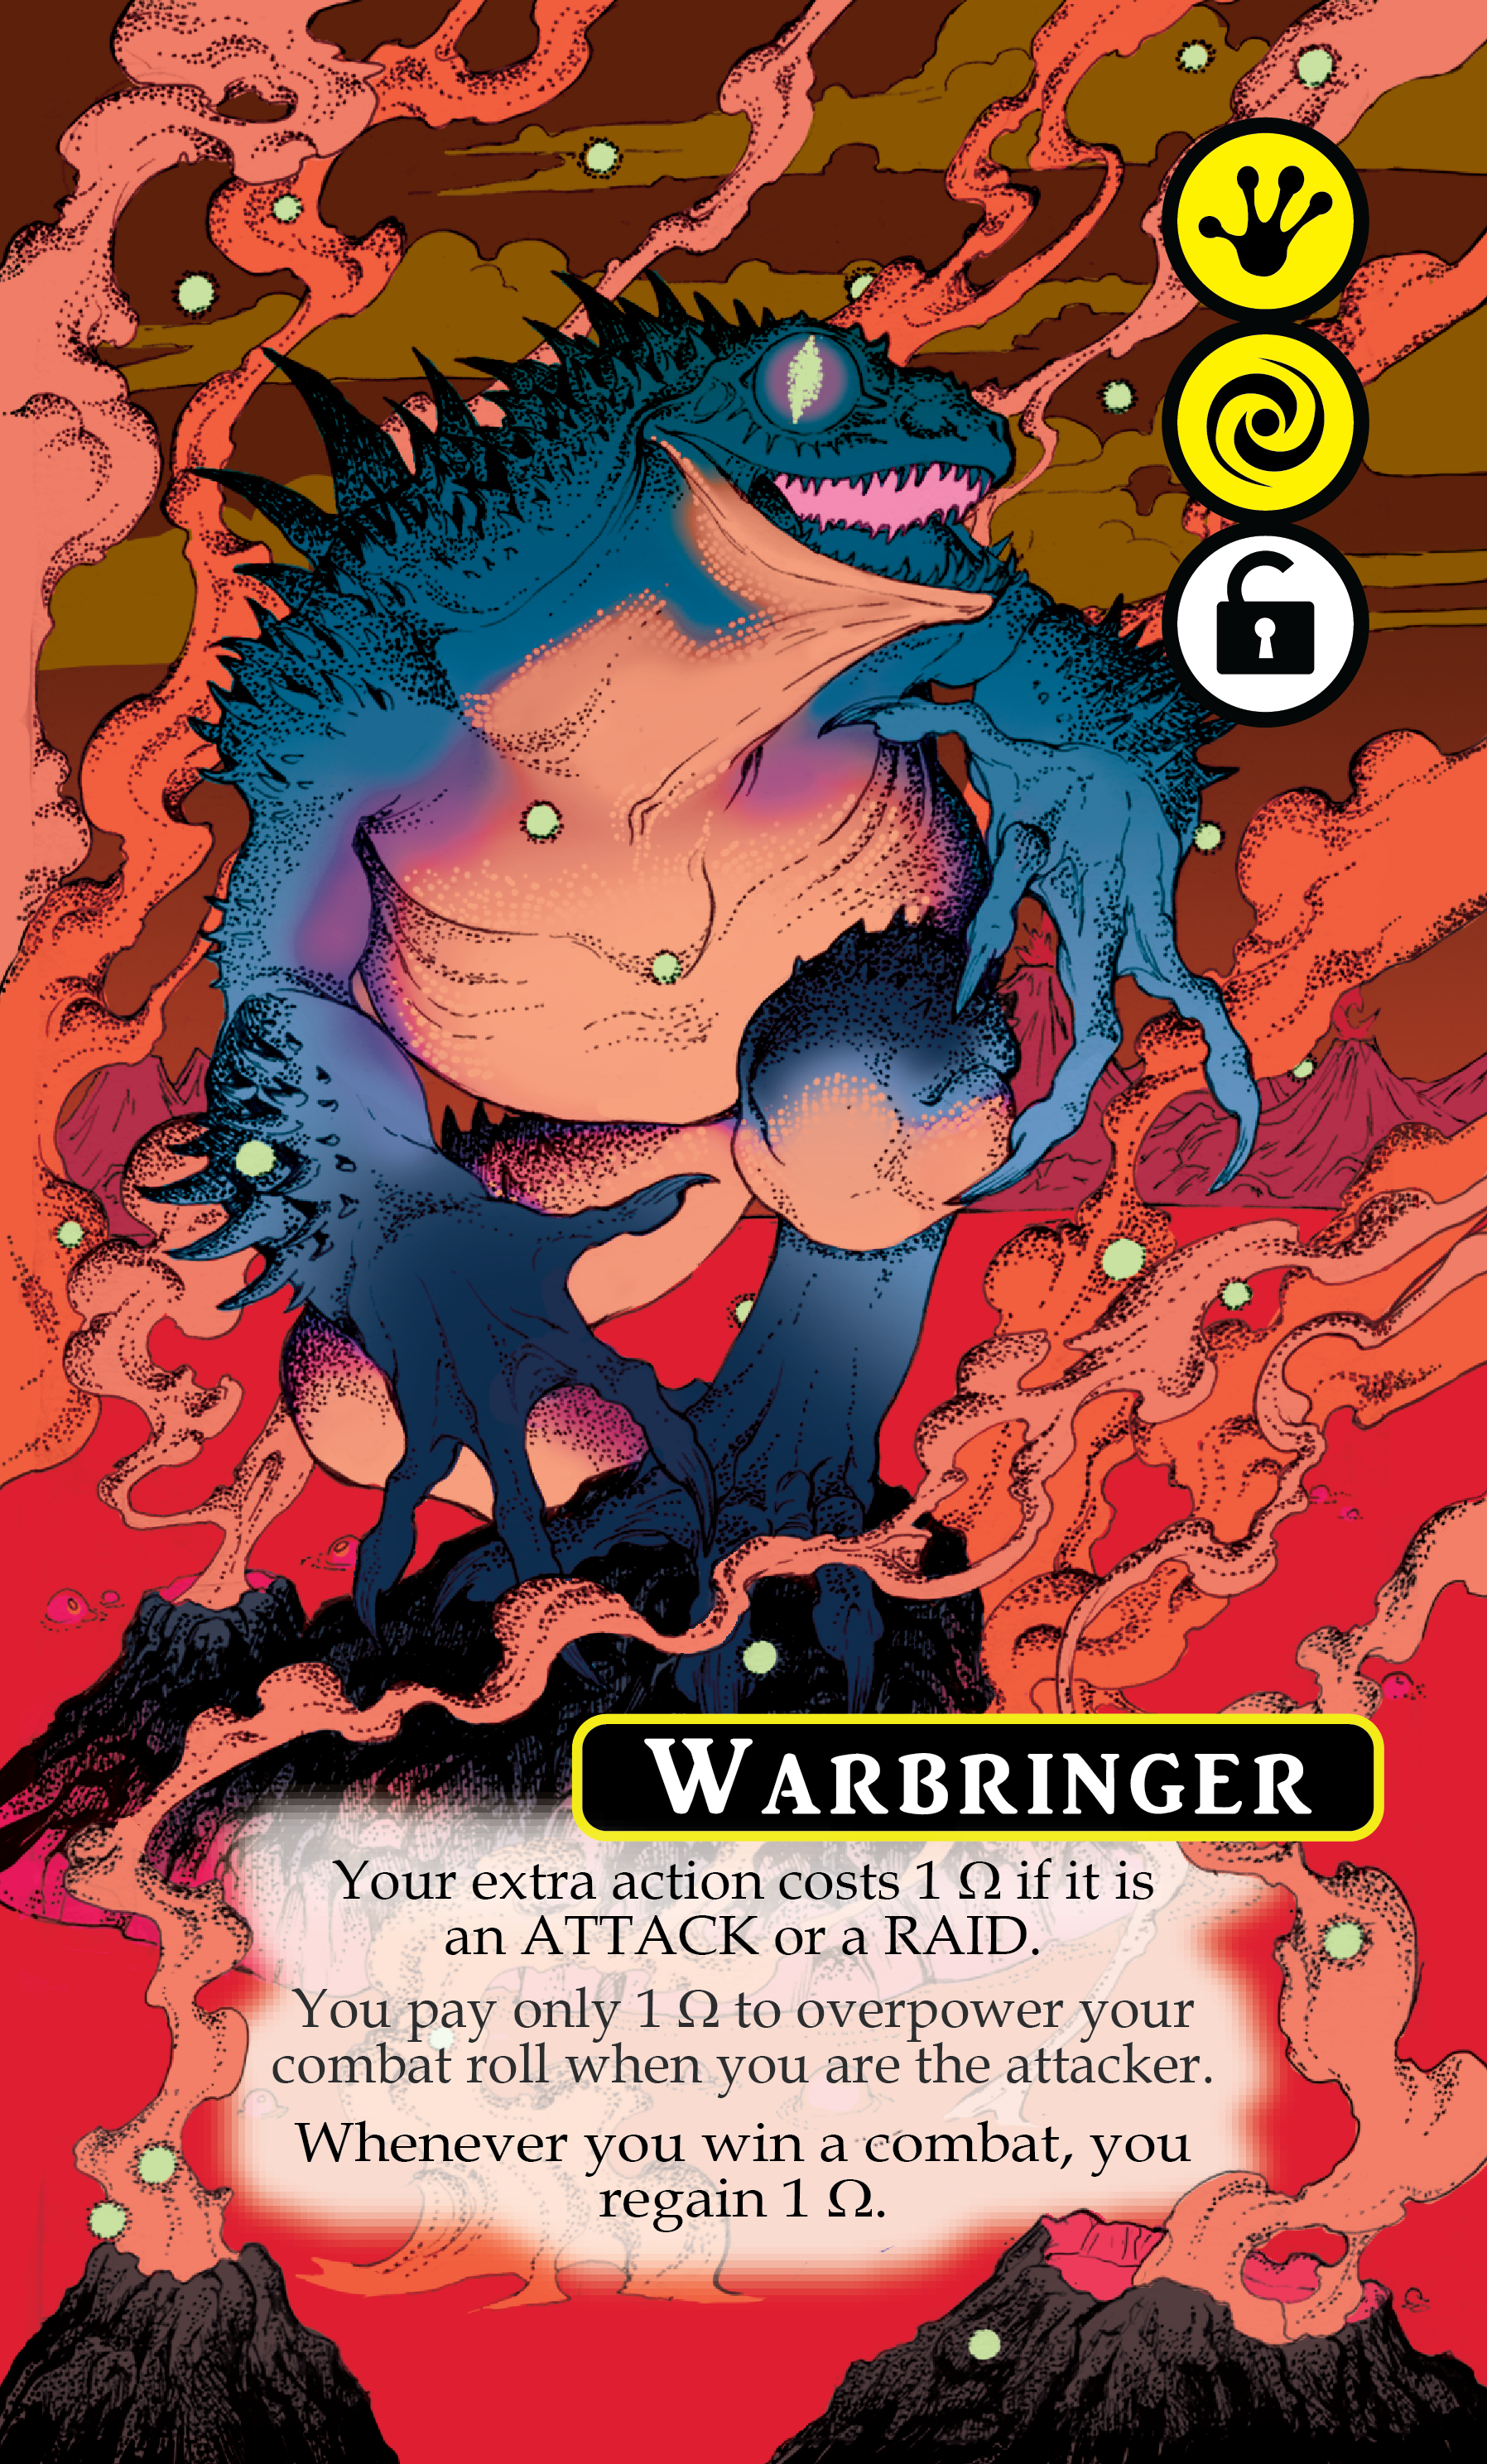 Warbringer Card FINAL (4 Feb 2020)-01.png